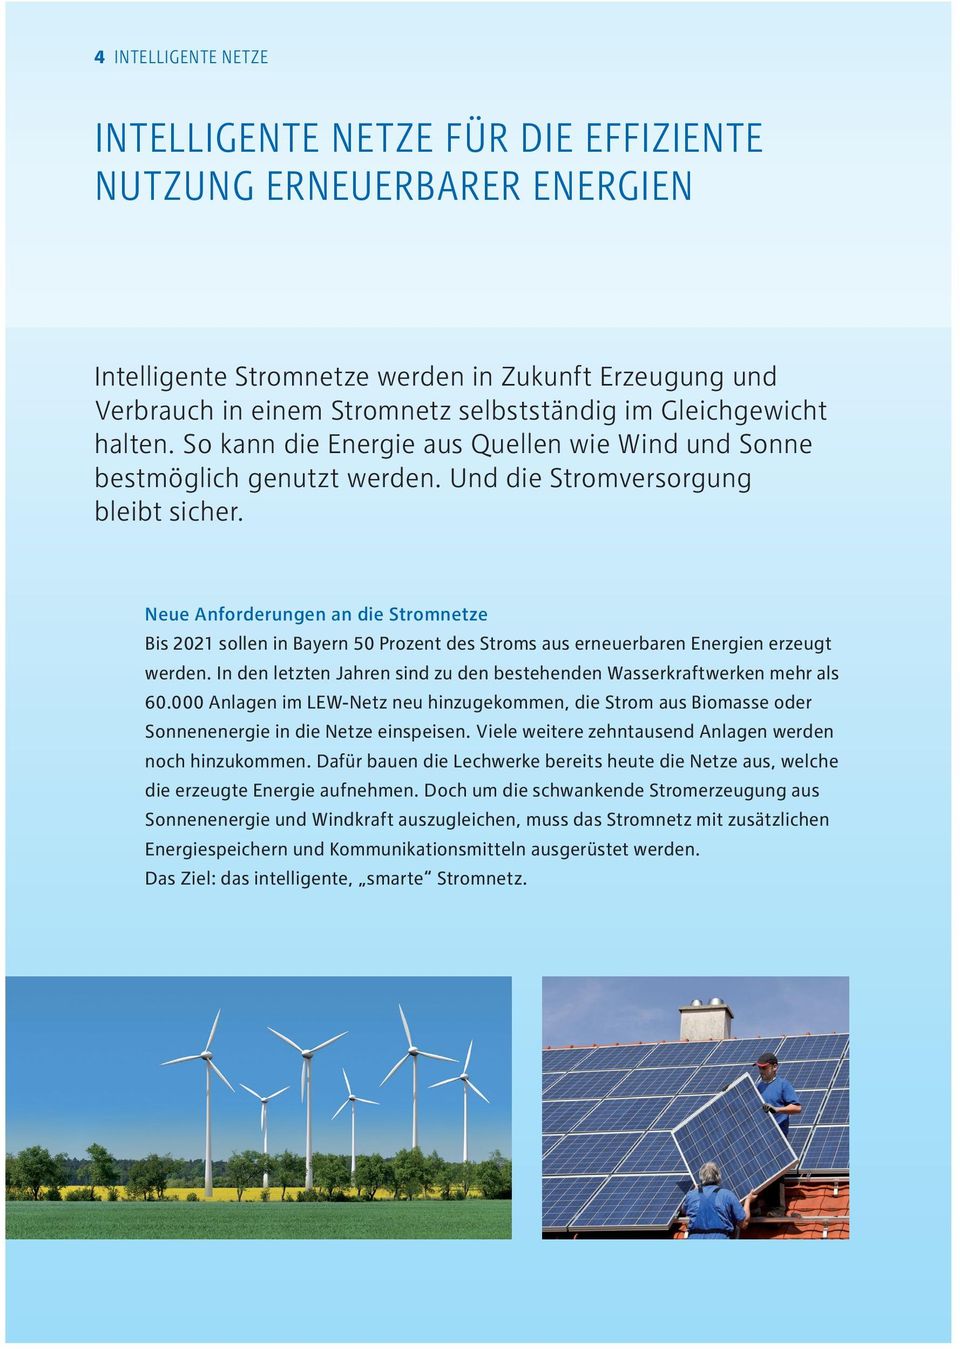 Neue Anforderungen an die Stromnetze Bis 2021 sollen in Bayern 50 Prozent des Stroms aus erneuerbaren Energien erzeugt werden.